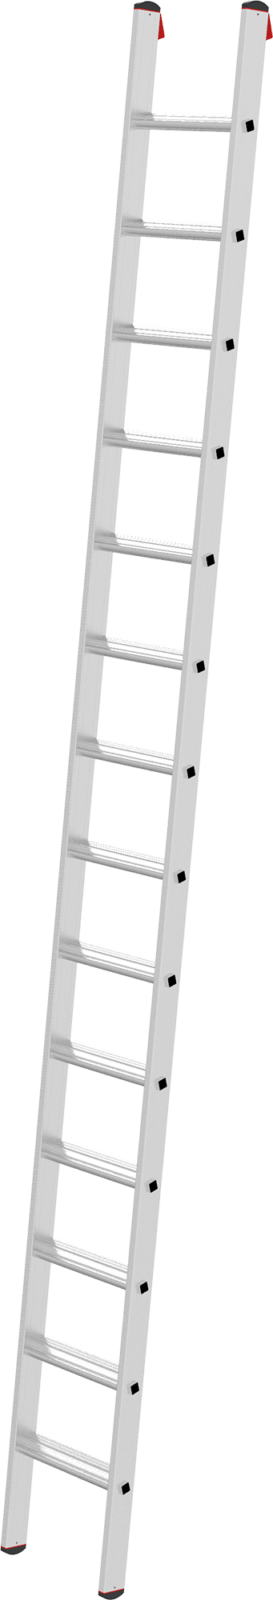 Профессиональная алюминиевая приставная лестница с развальцованными ступенями 80 мм NV3214 артикул 3214114